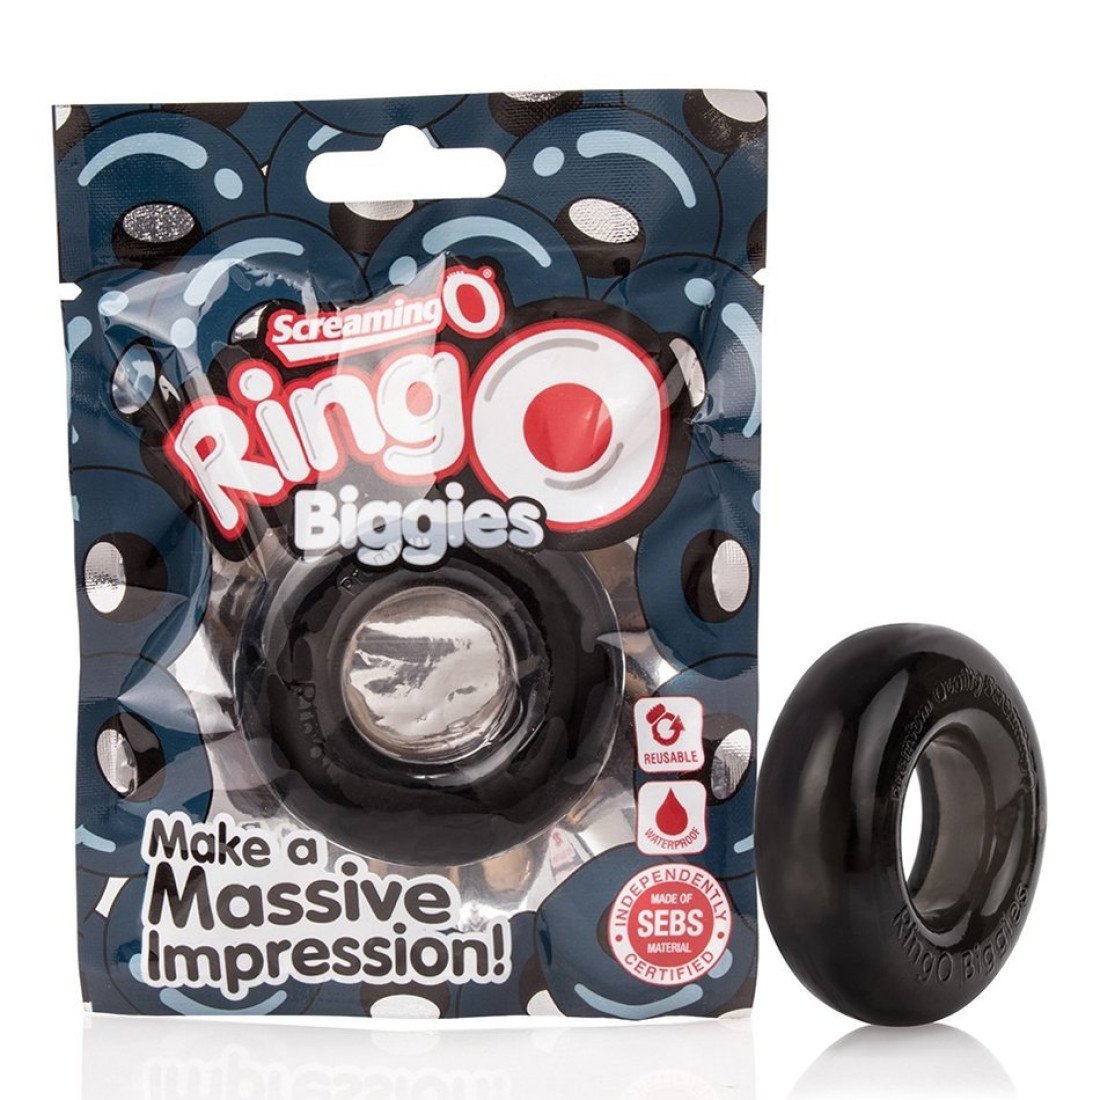 Penio žiedas „RingO Biggies“ - Screaming O